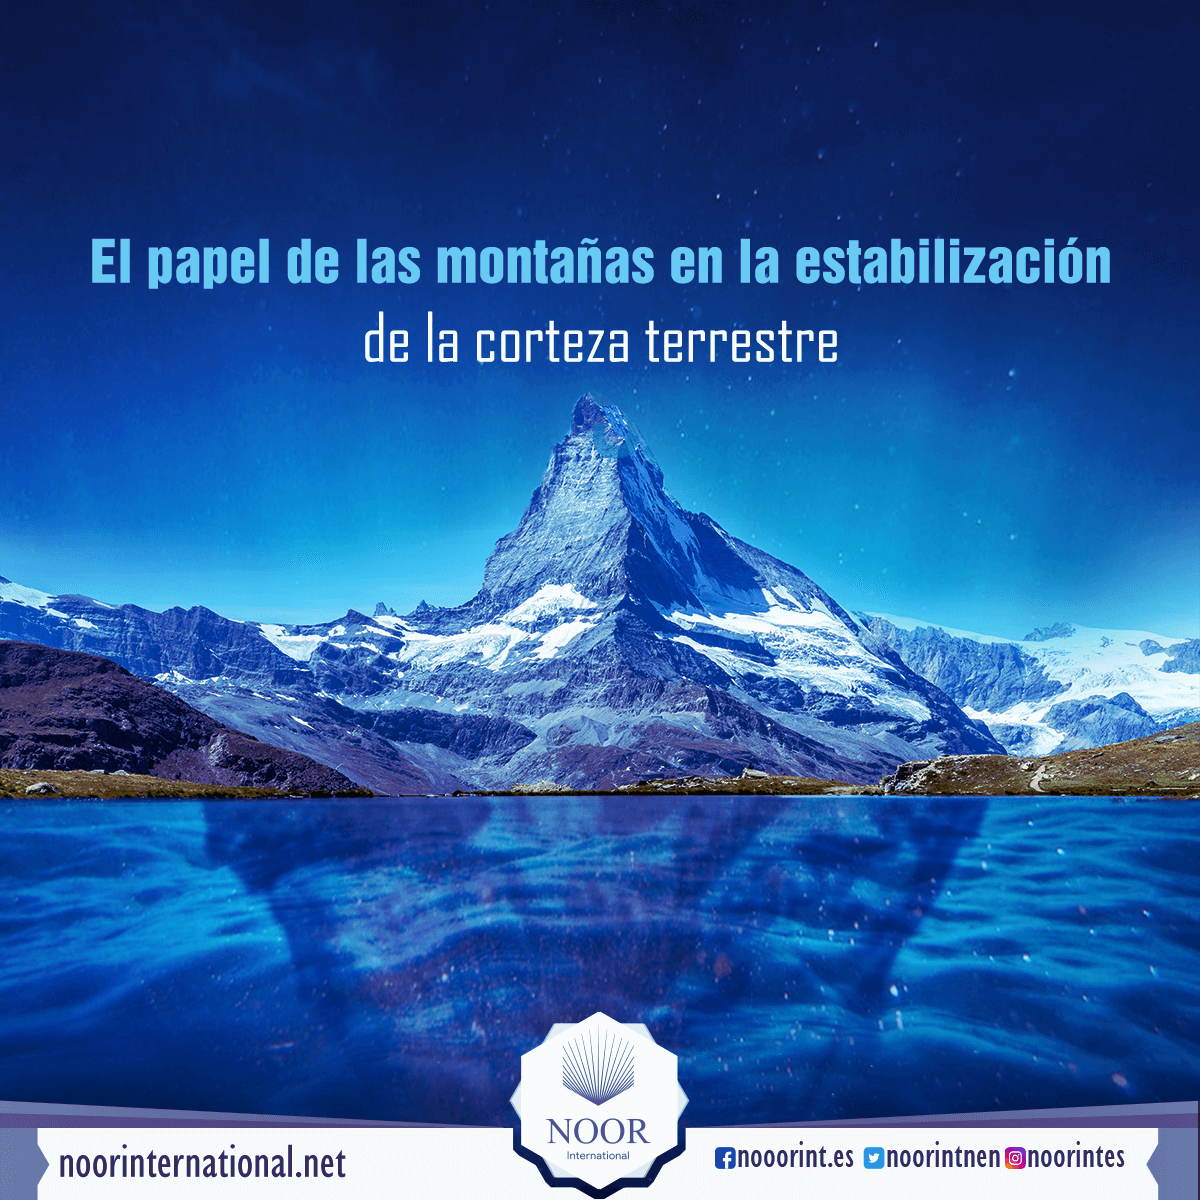 El papel de las montañas en la estabilización de la corteza terrestre